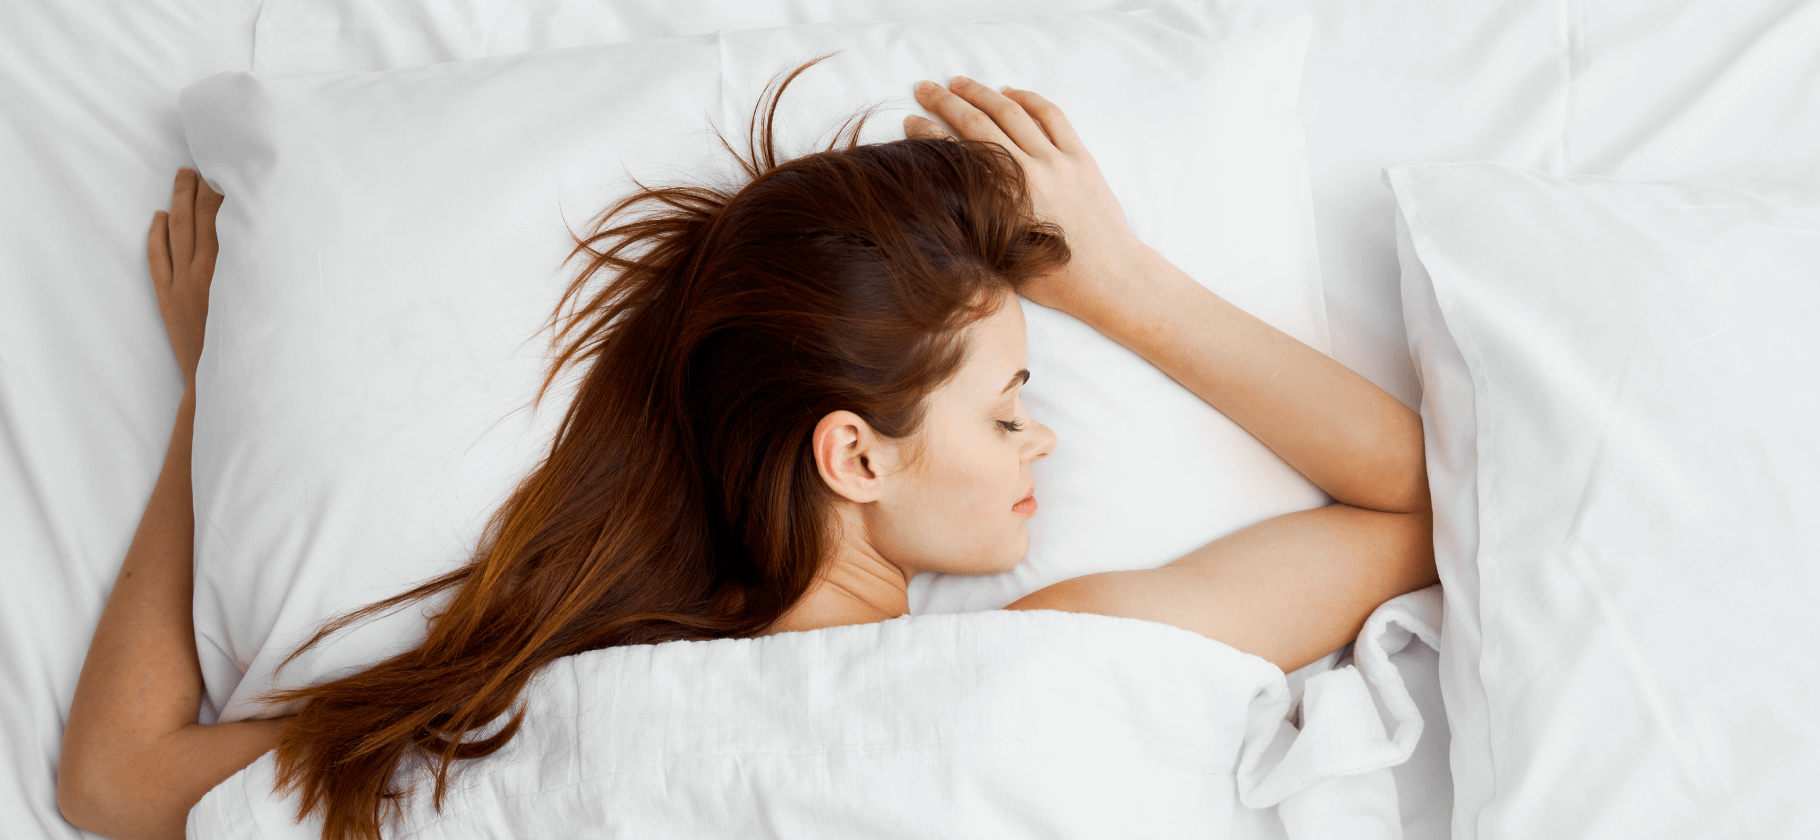 6 ортопедических подушек для комфортного сна